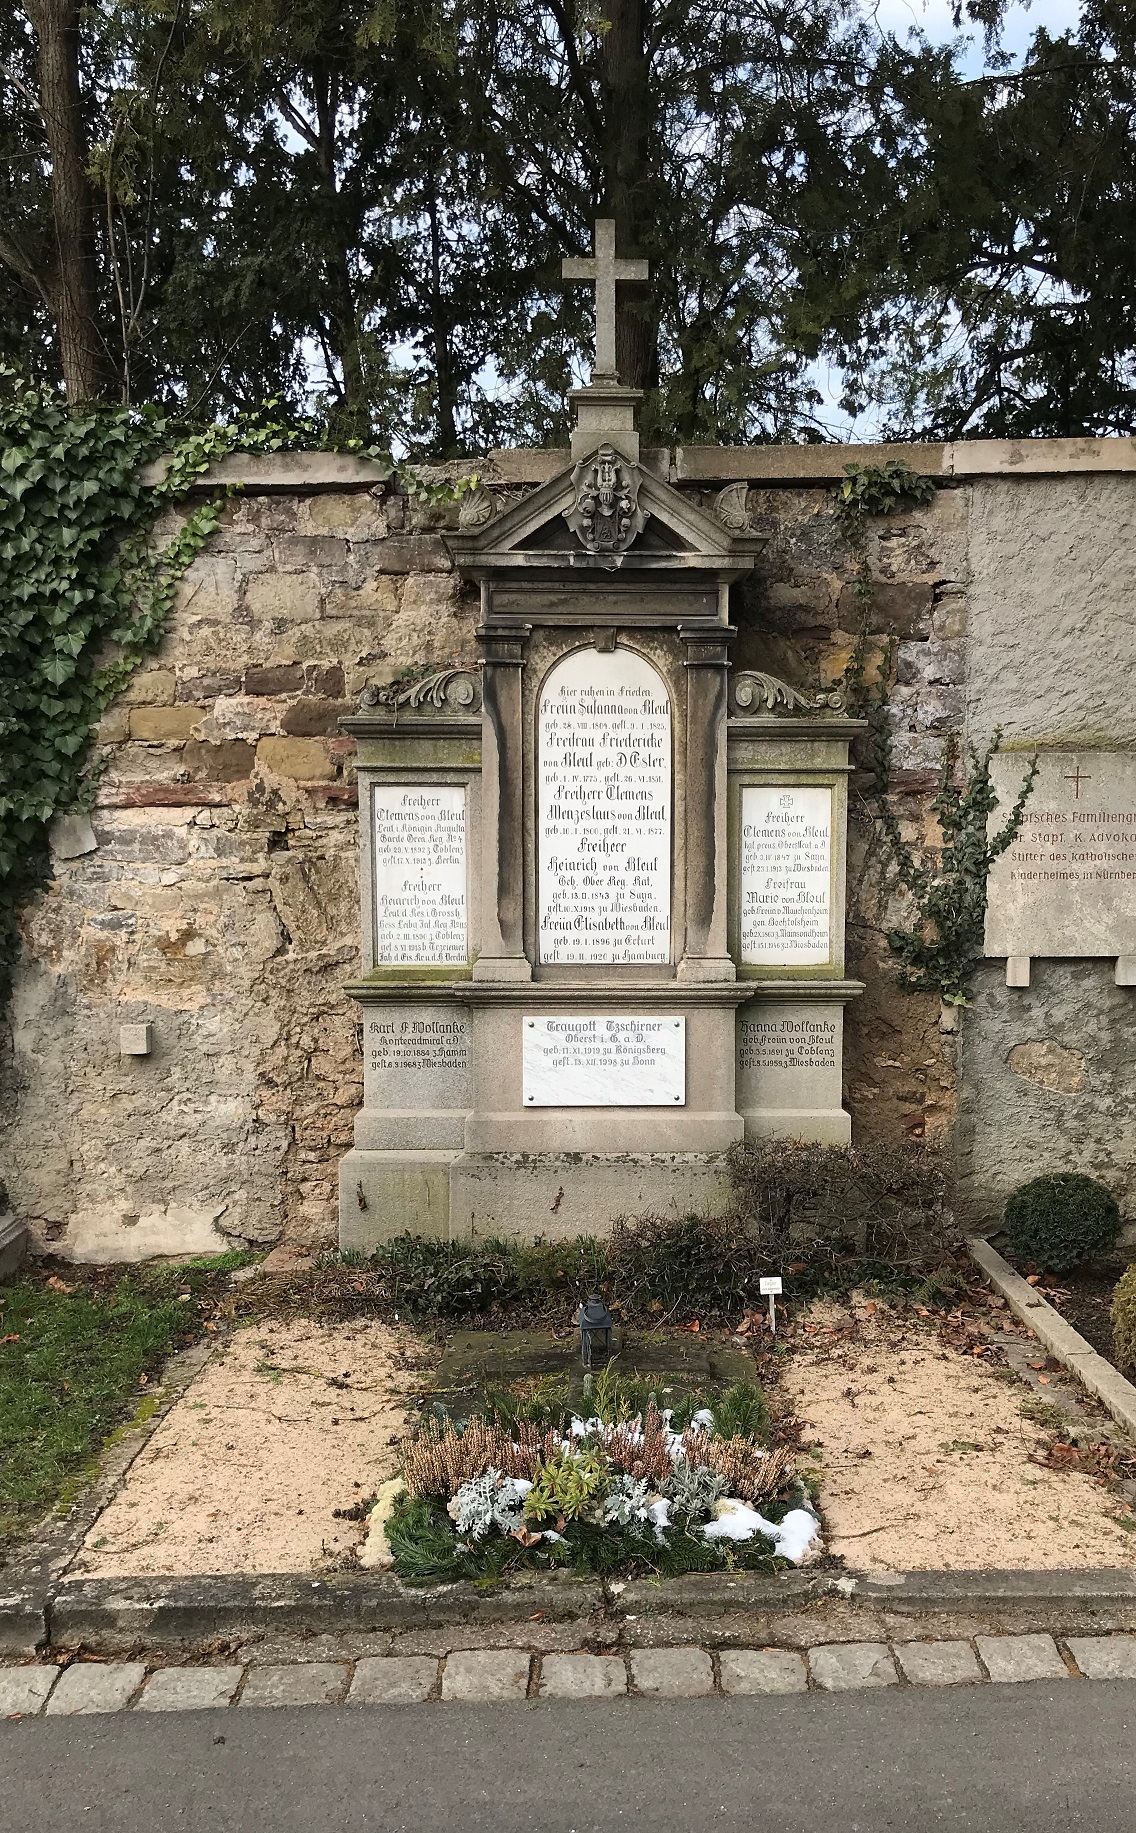 Grabstein Maria Freifrau von Bleul, geb. Freiin von Mauchenheim genannt Bechtolsheim, Hauptfriedhof Würzburg, Unterfranken, Bayern, Deutschland